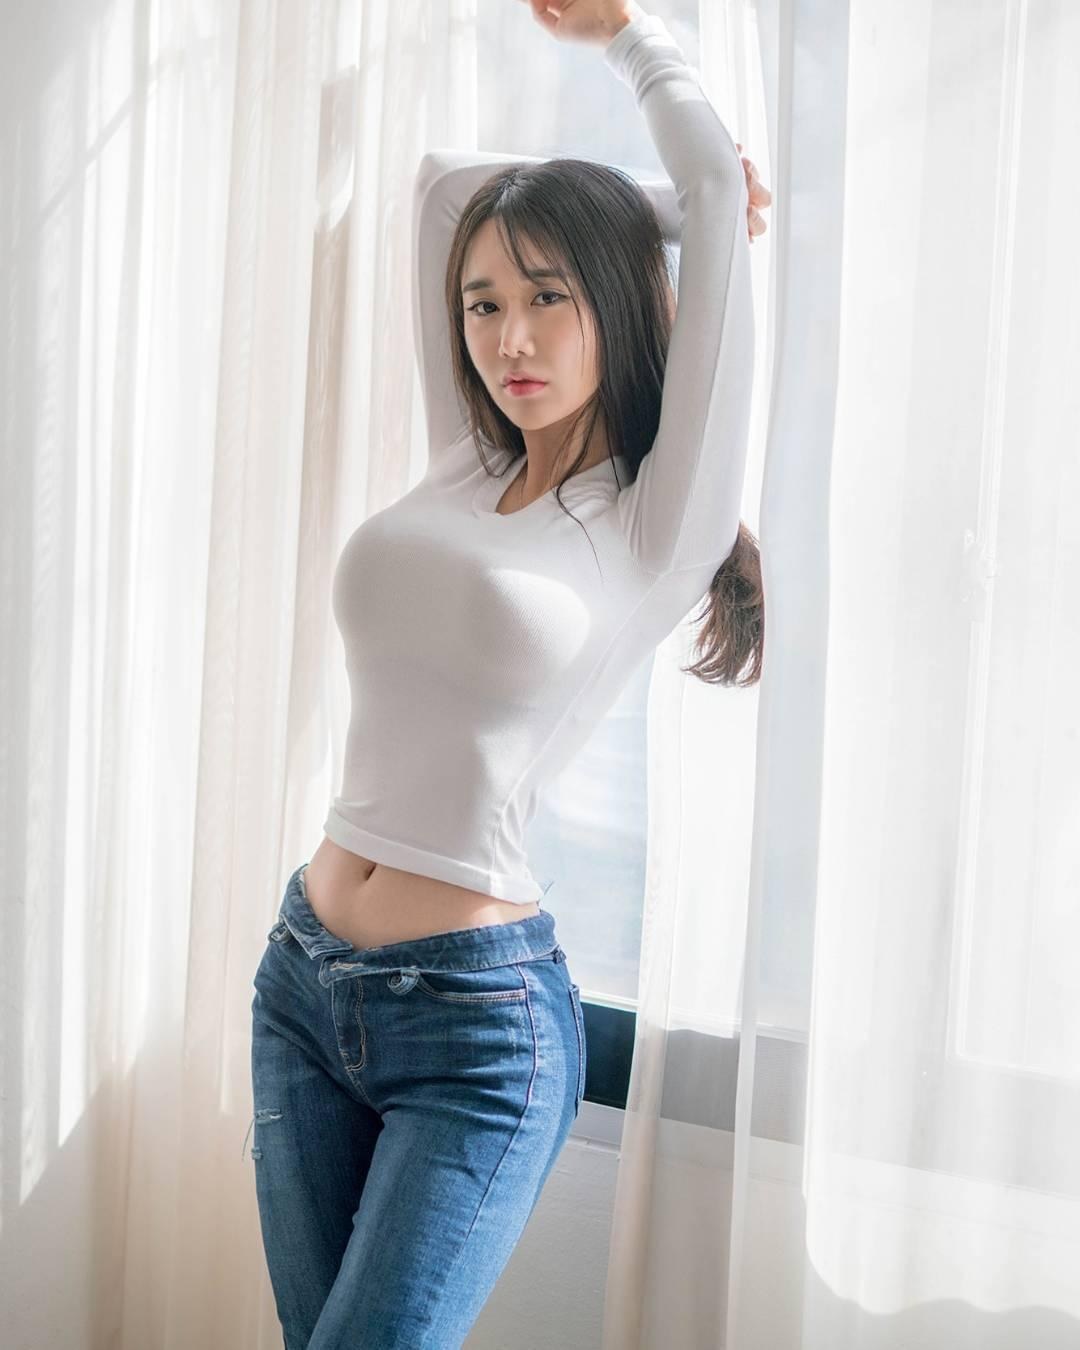 сисастая корейская девушка в короткой юбке фото